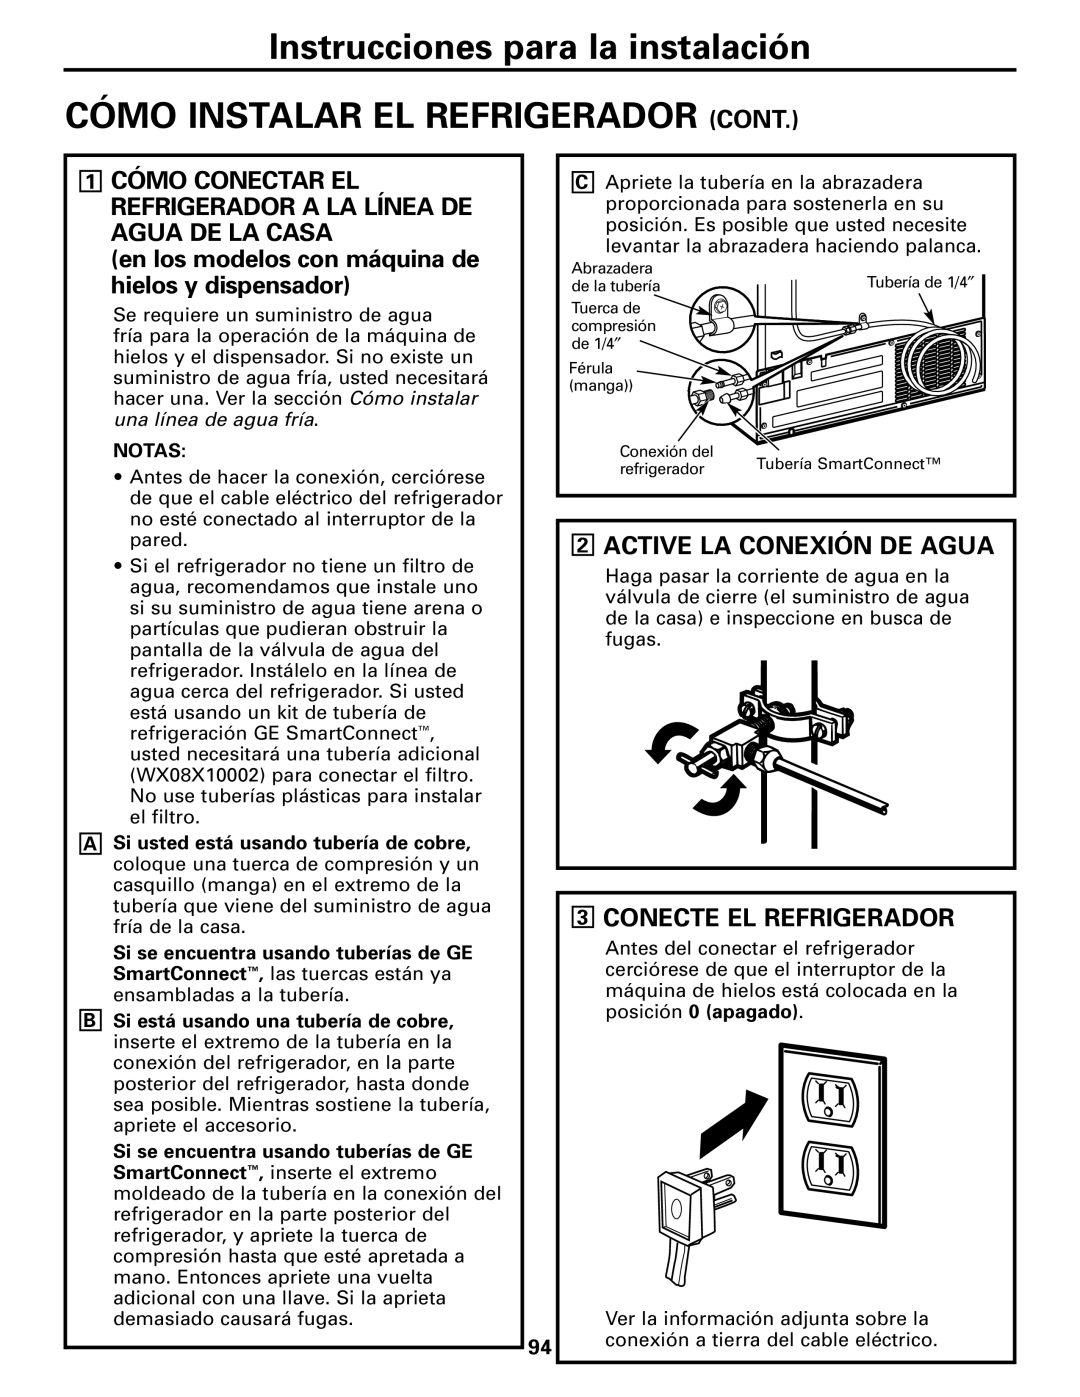 GE 25 and 27 Cómo Instalar El Refrigerador Cont, 2ACTIVE LA CONEXIÓN DE AGUA, 3CONECTE EL REFRIGERADOR 